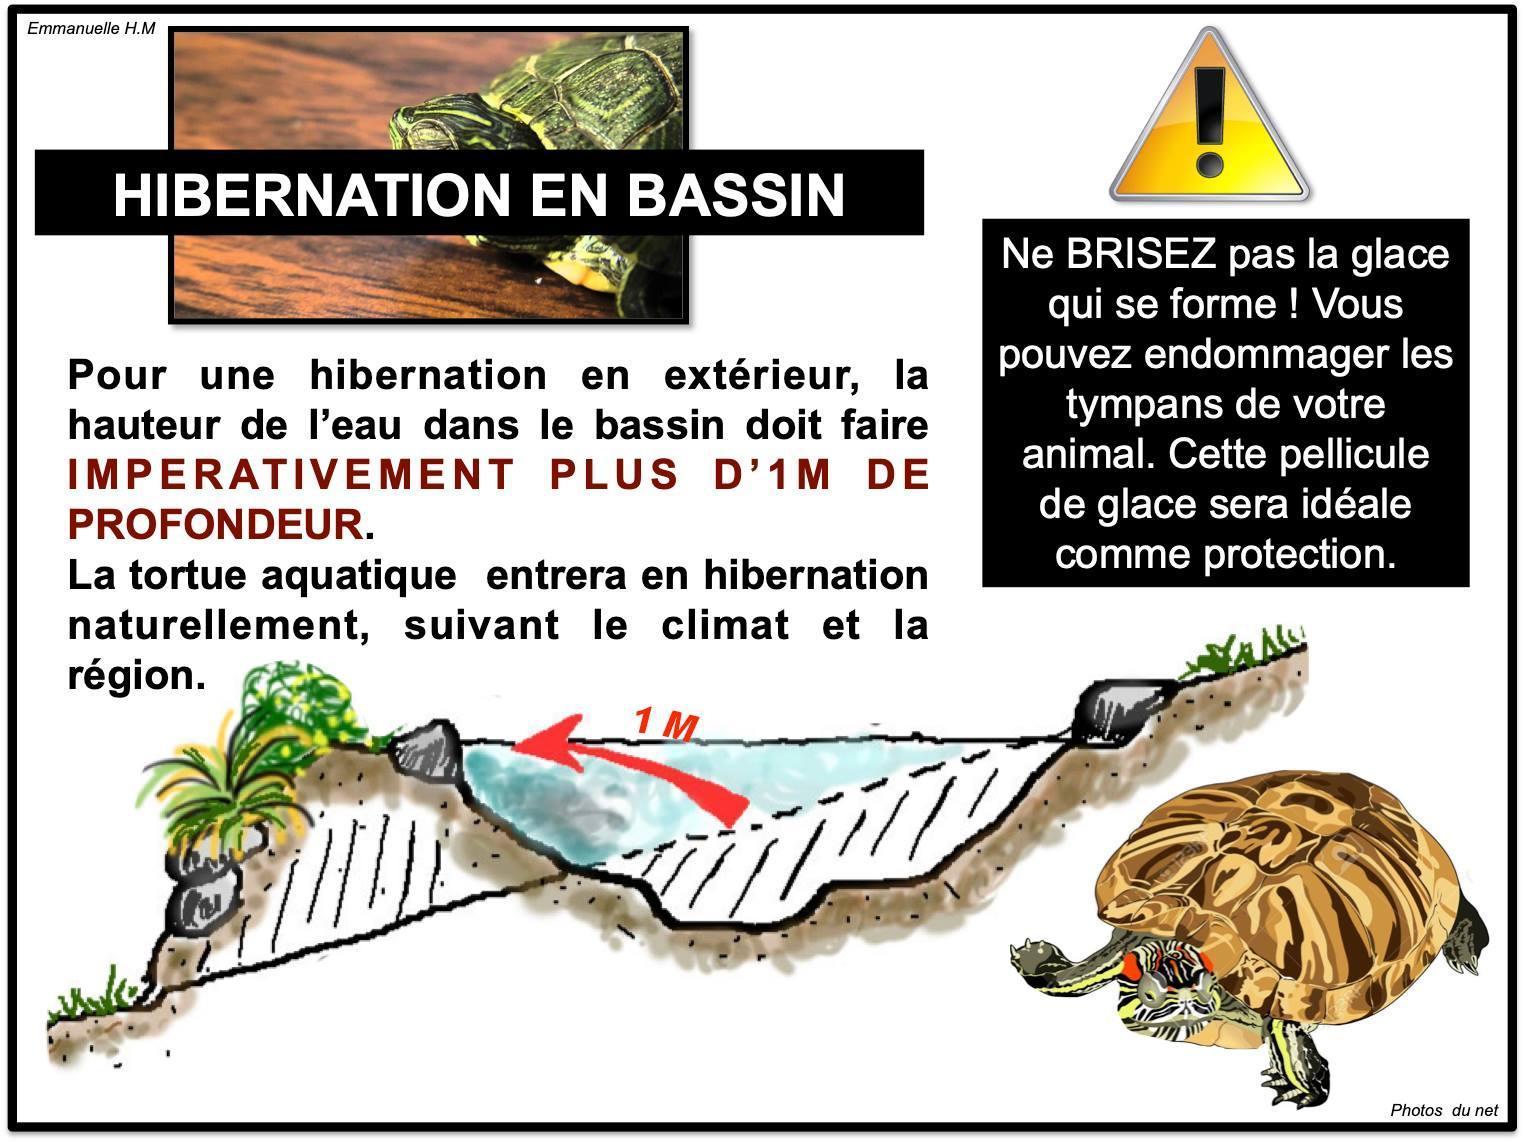 Hibernation tortue aquatique5